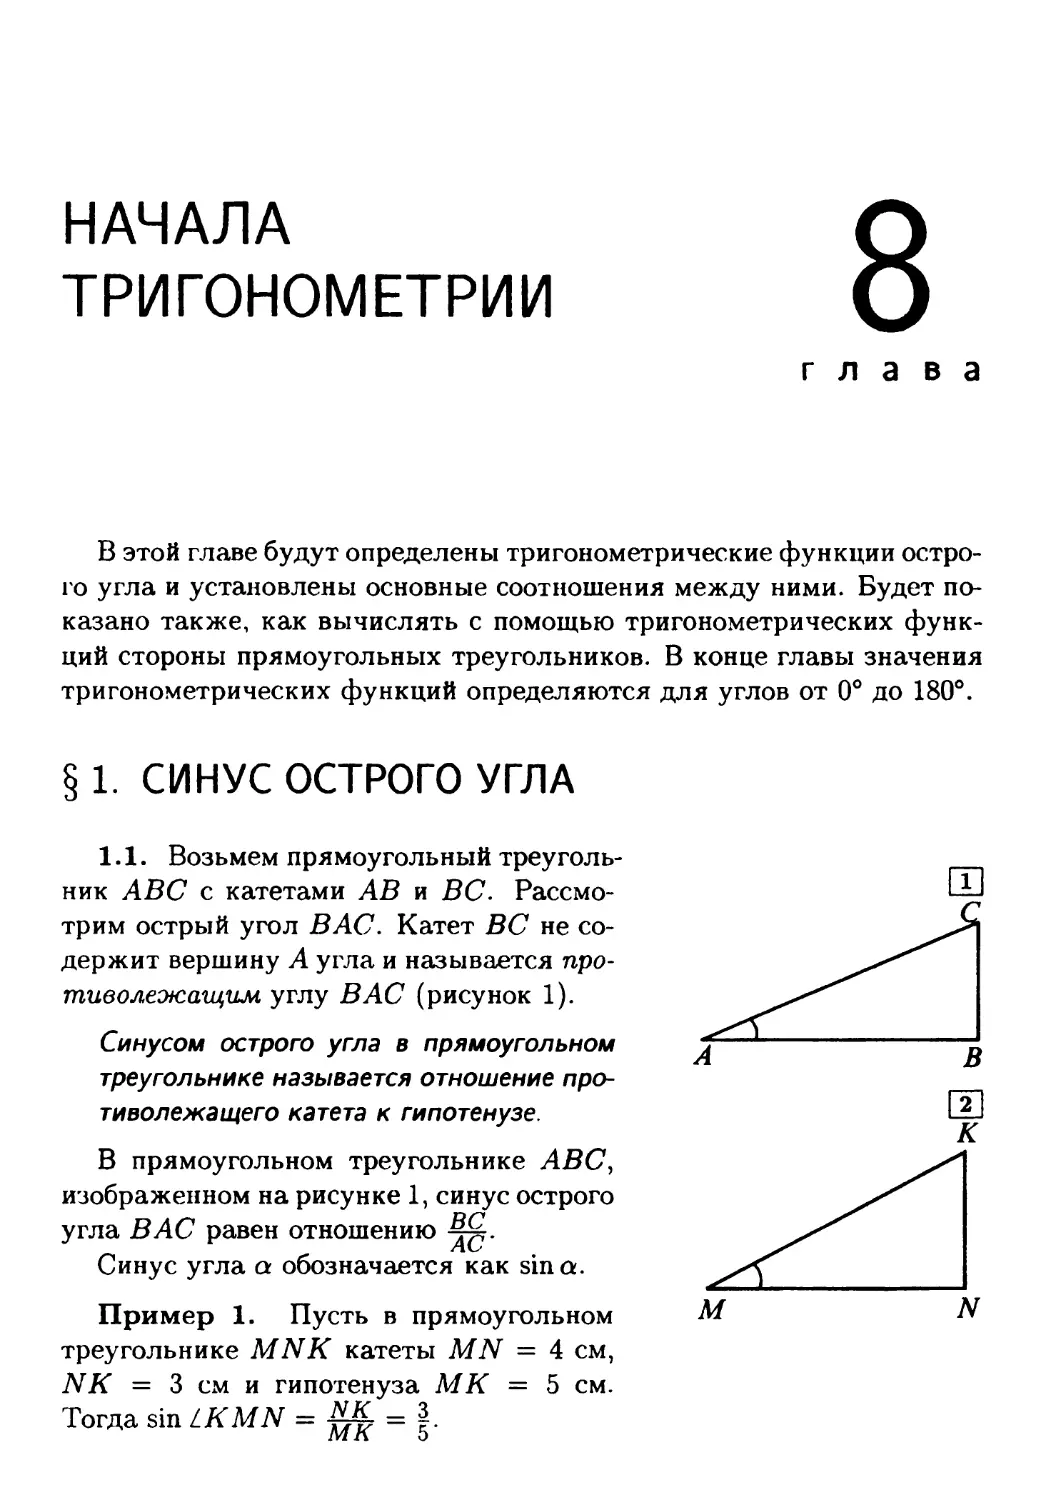 Глава 8. Тригонометрические функции острого угла